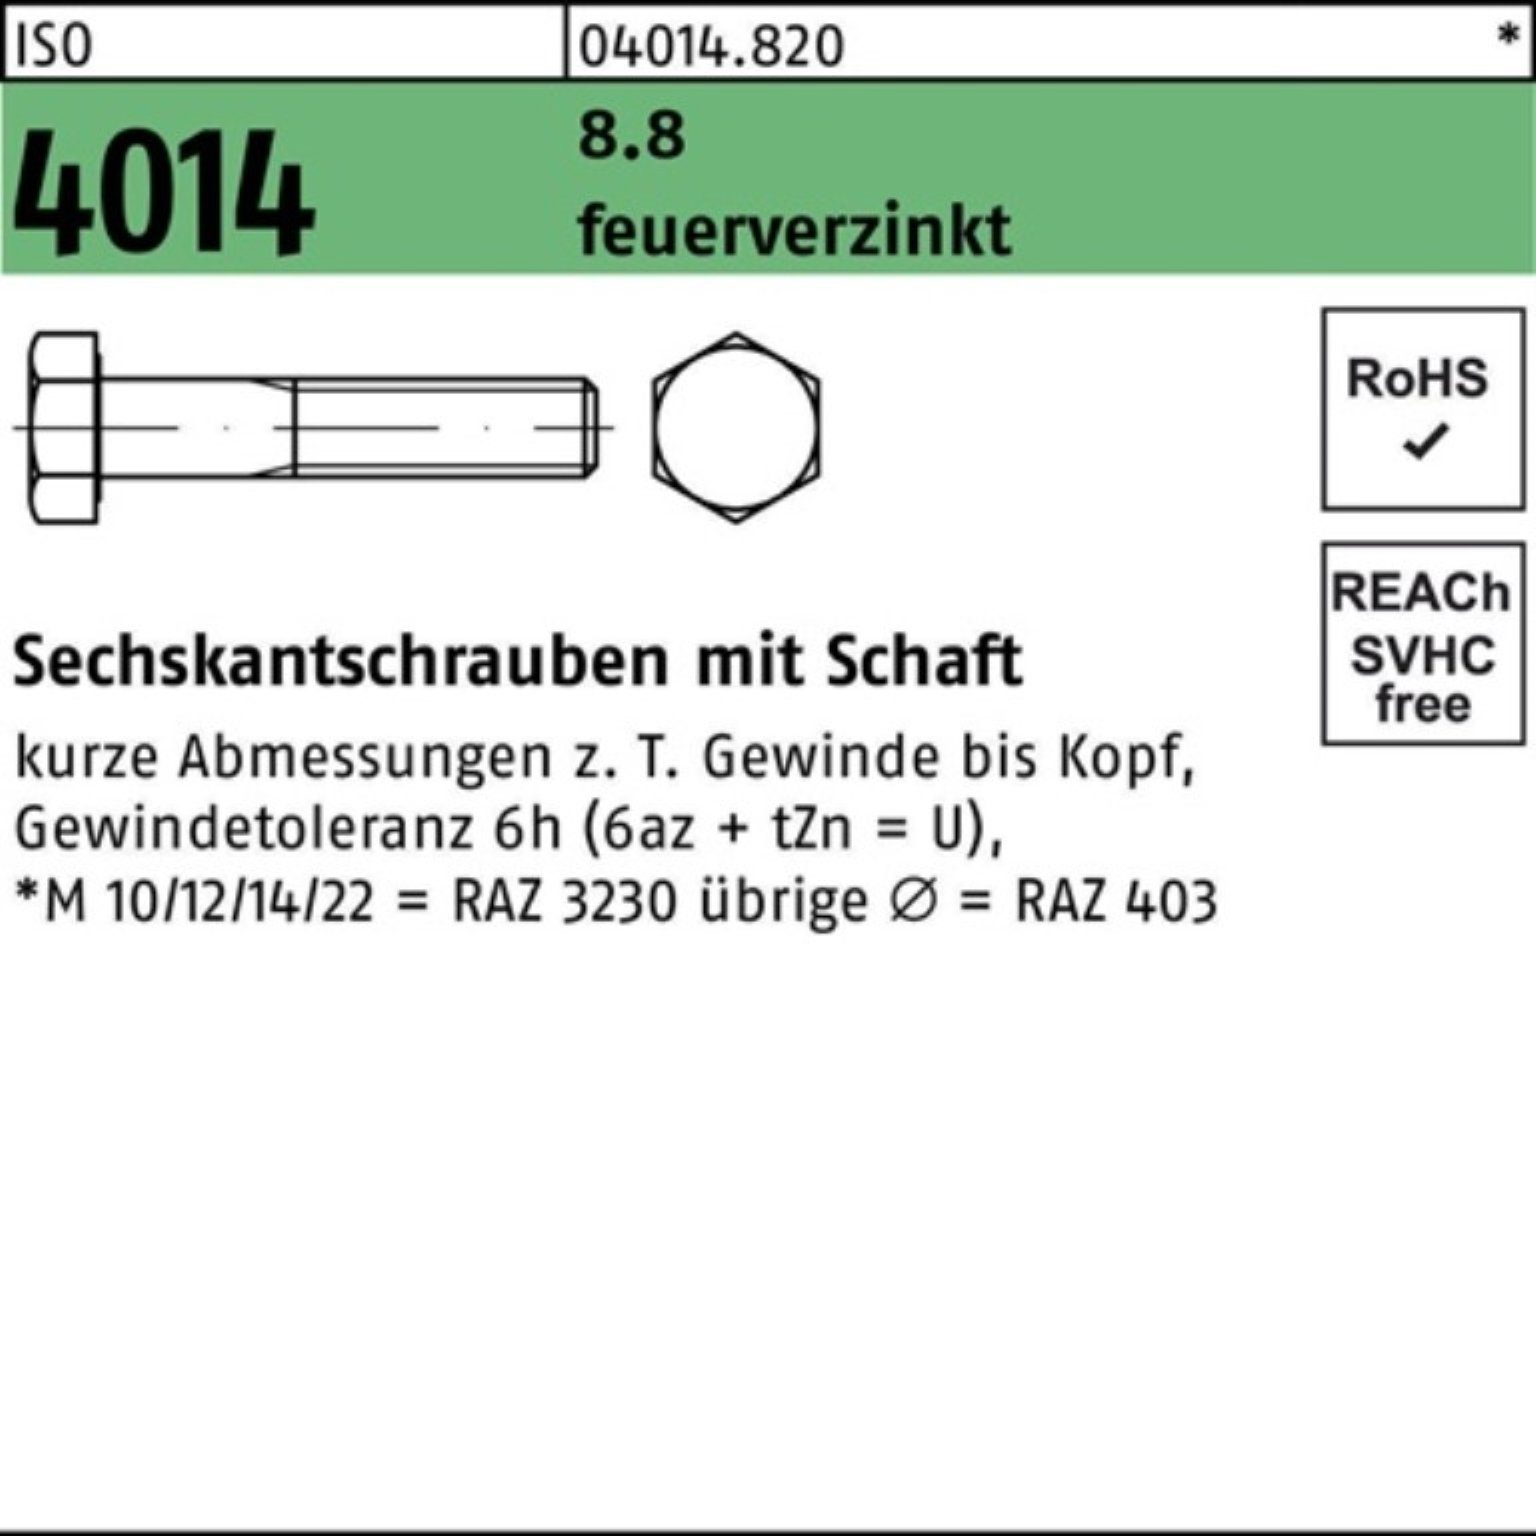 Bufab Sechskantschraube 100er Pack Sechskantschraube ISO 4014 Schaft M10x 110 8.8 feuerverz. 5